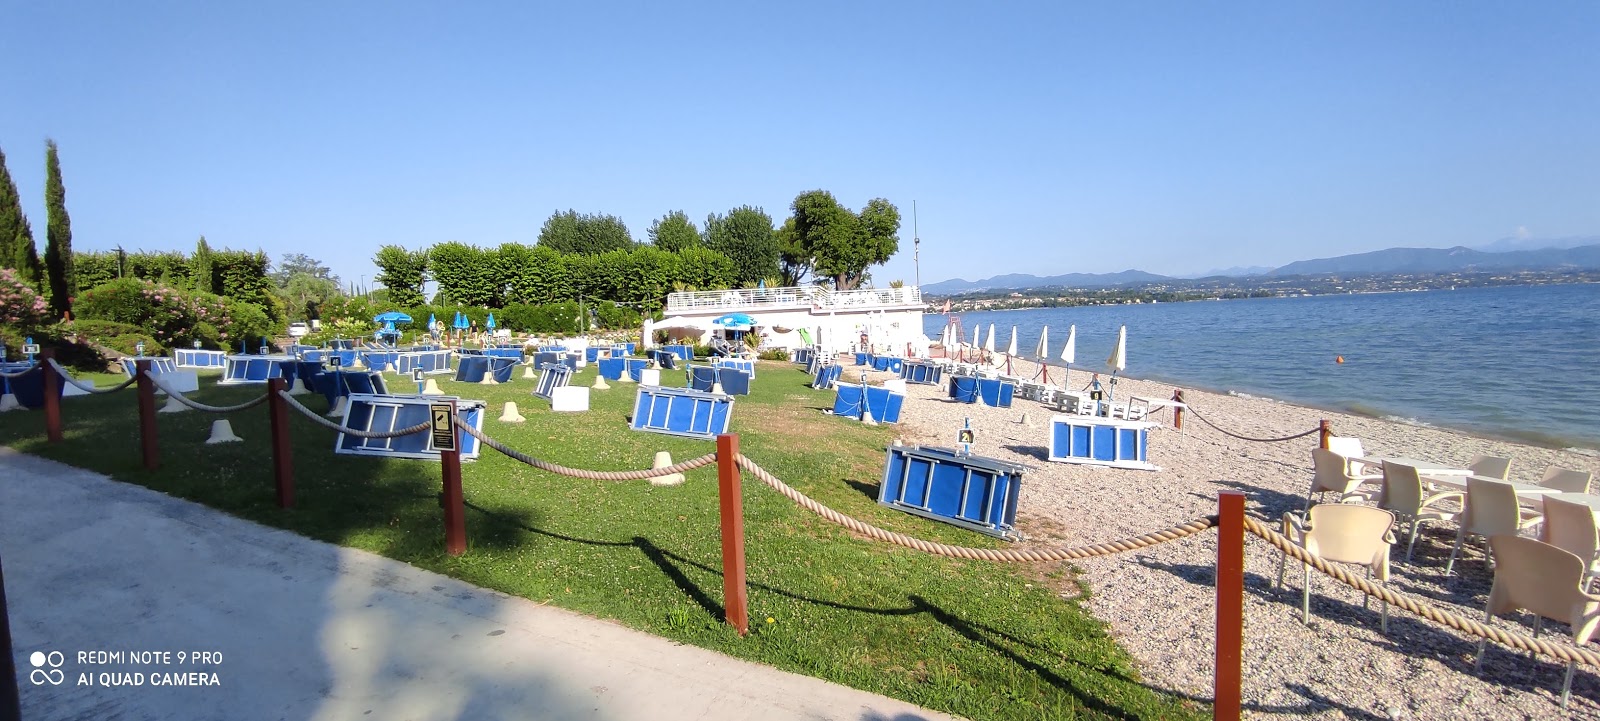 Valokuva Spiaggia Cala de Orista. sisältäen tilava ranta